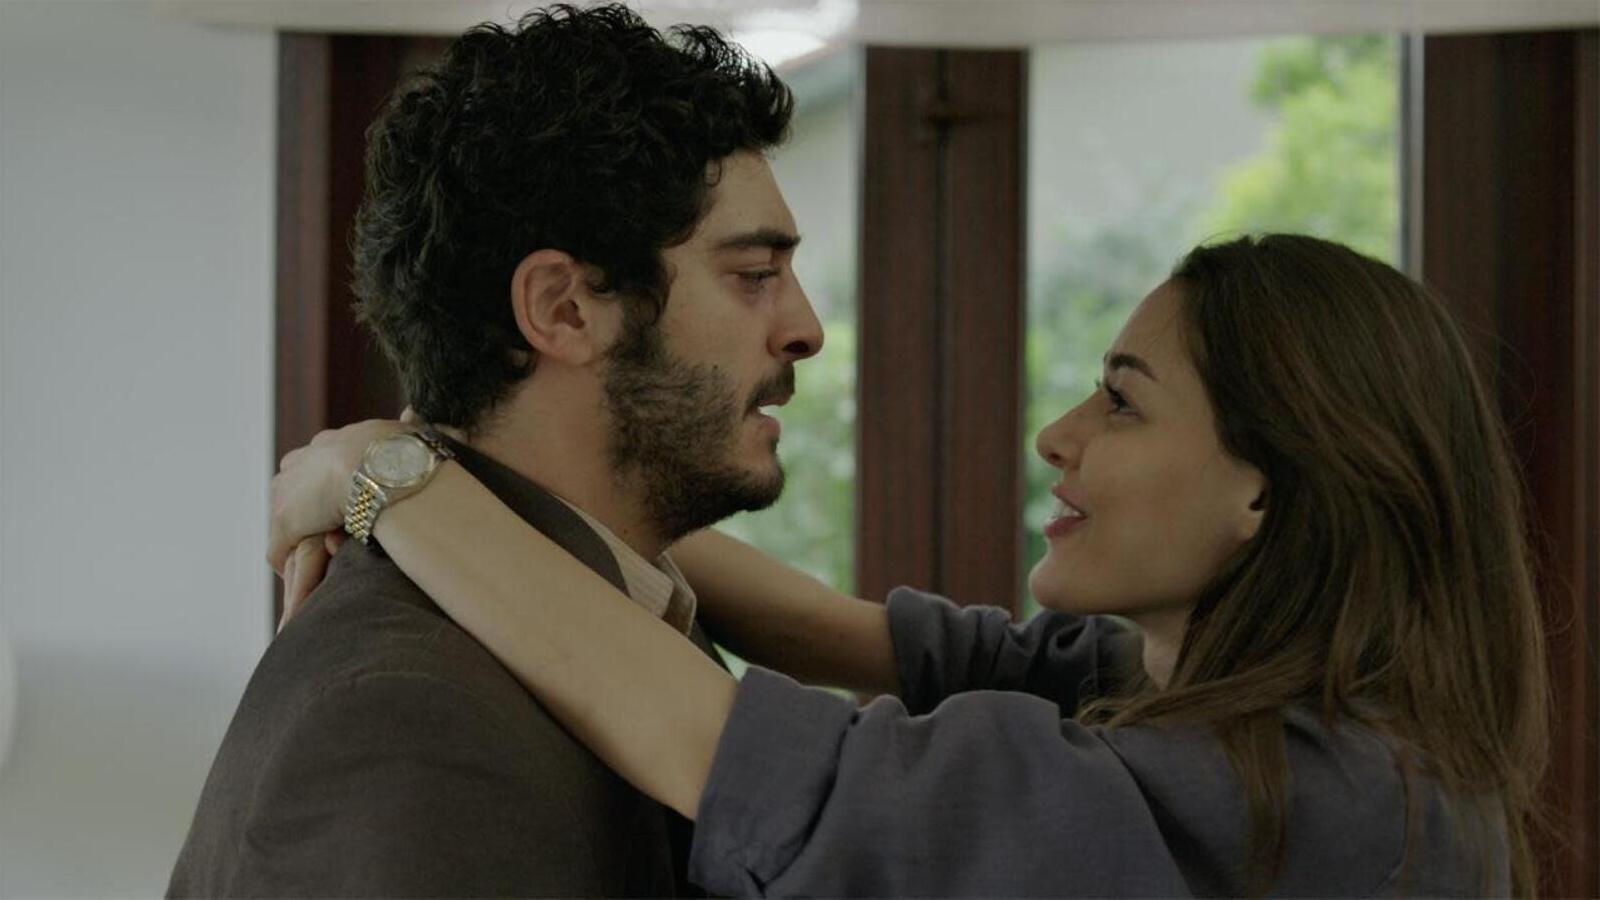 Interrupted - L'amore incompiuto è la nuova serie turca disponibile da oggi su Mediaset Infinity gratuitamente